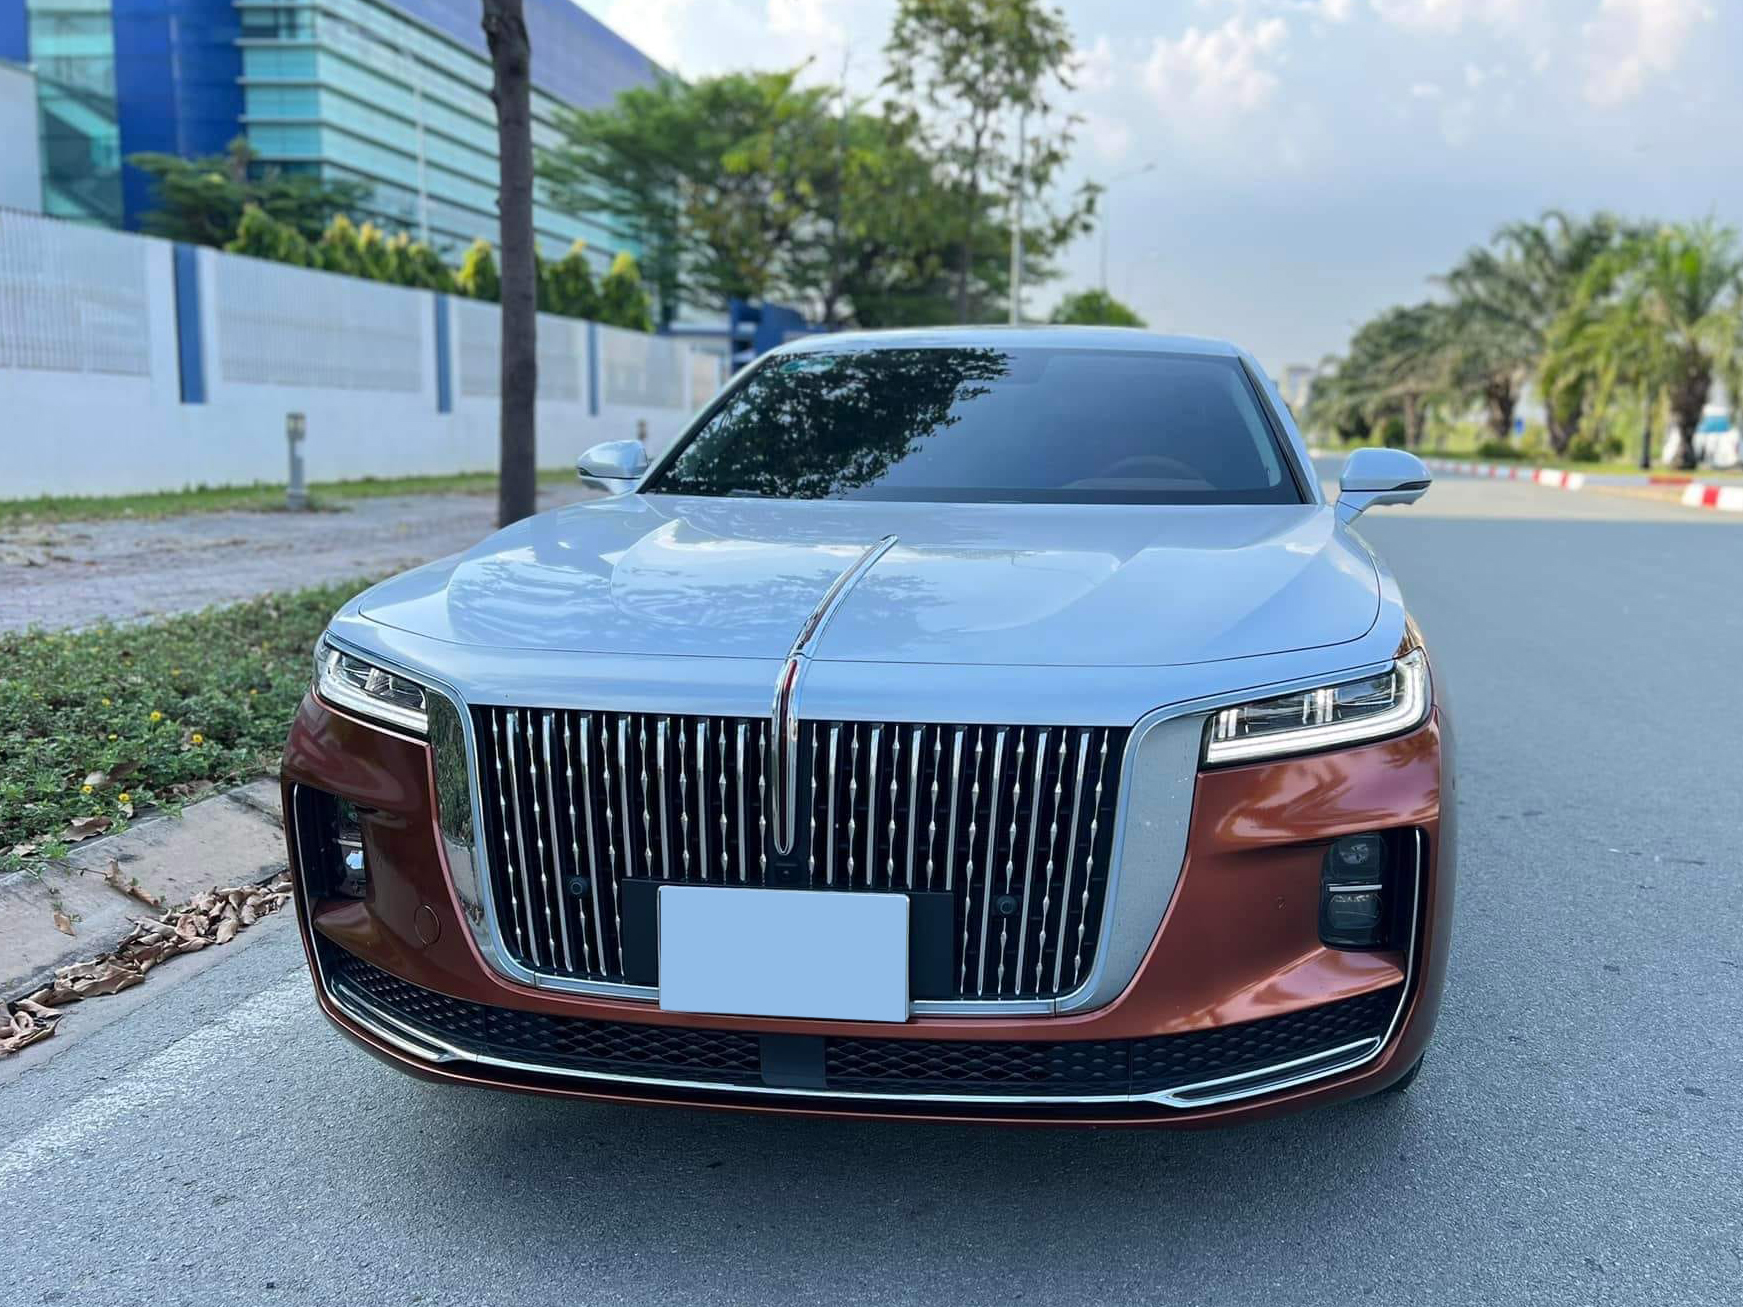 Hongqi H9 'lướt' chào giá hơn 1,6 tỷ: Rẻ hơn xe mới gần 500 triệu, đổi màu kiểu Maybach, được ví như 'Rolls-Royce giá rẻ'